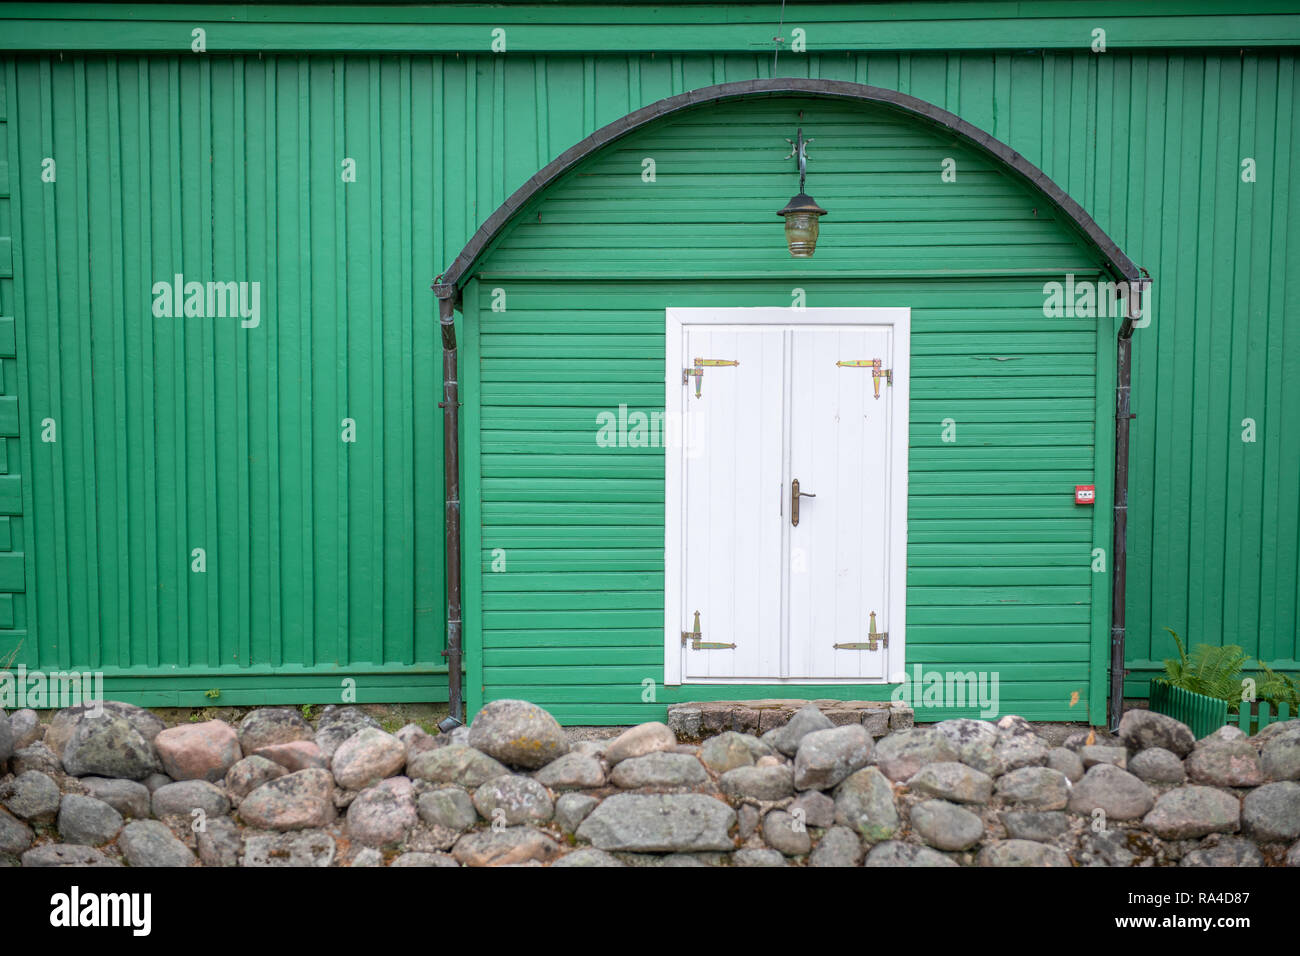 Porte Blanche en vert mur de la mosquée de Tatar Lipka Kruszyniany, Kruszyniany, Pologne Banque D'Images